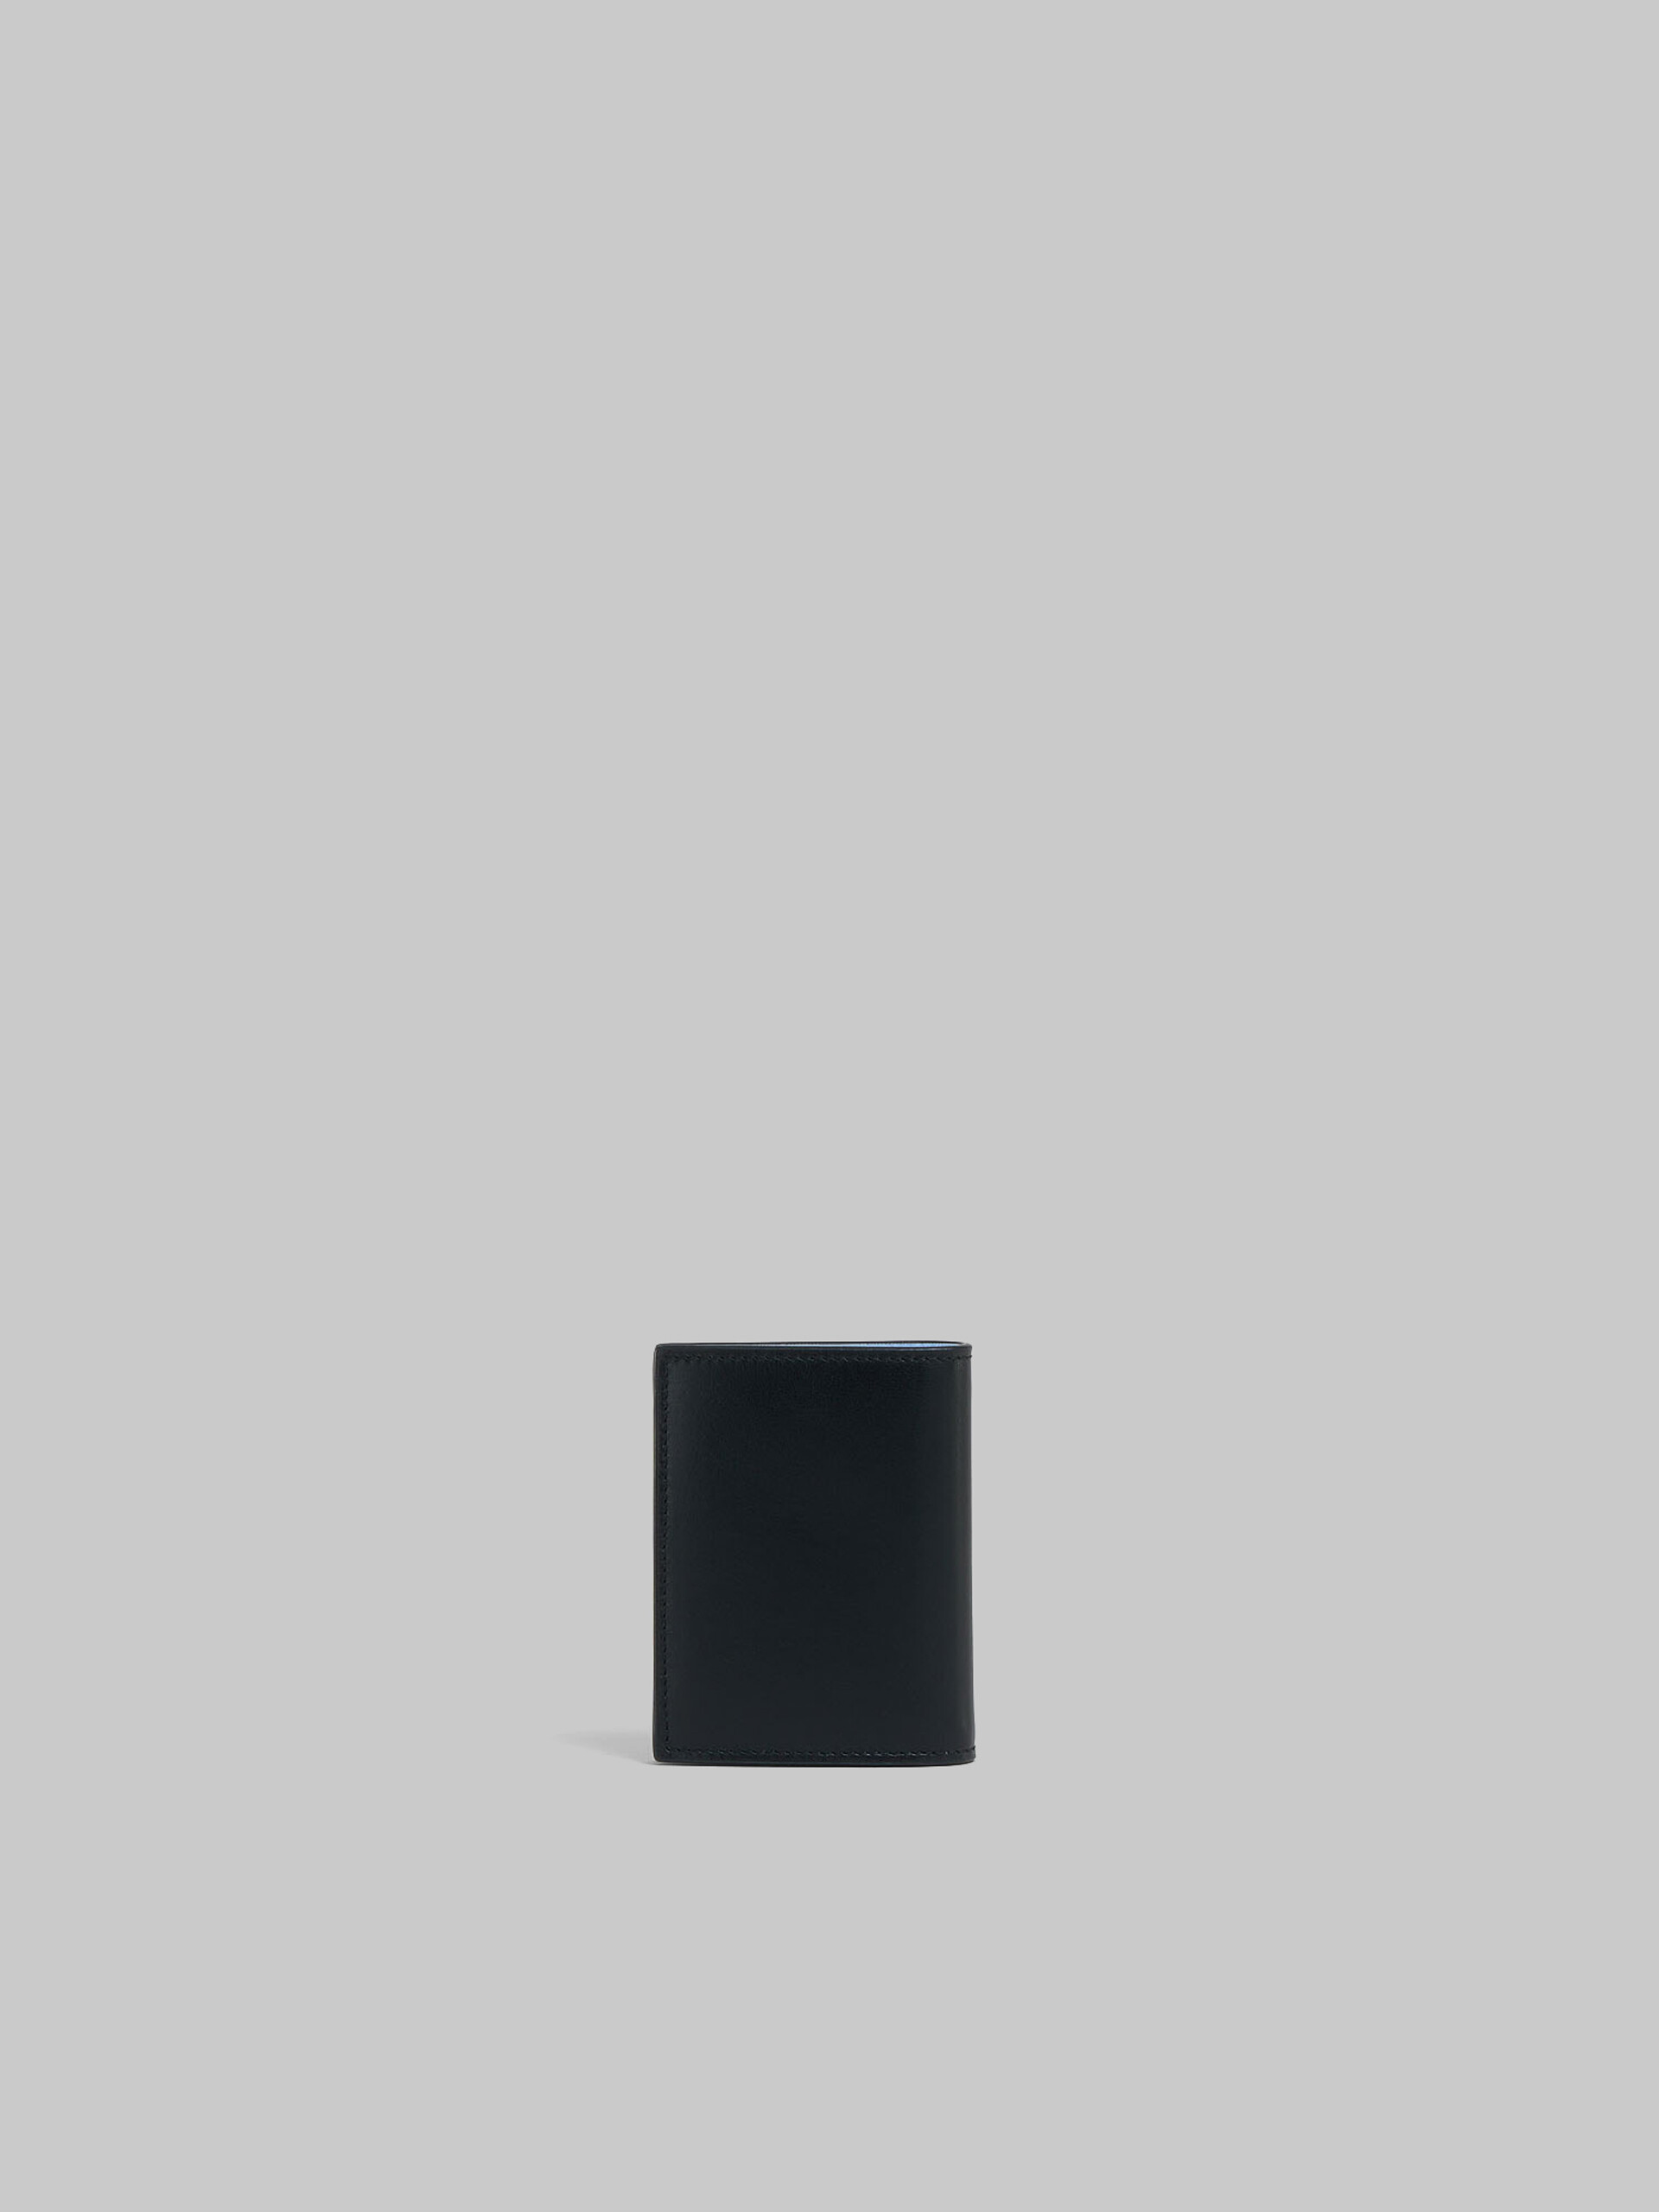 ブルー レザー製 二つ折りウォレット、レイズド マルニロゴ - 財布 - Image 3